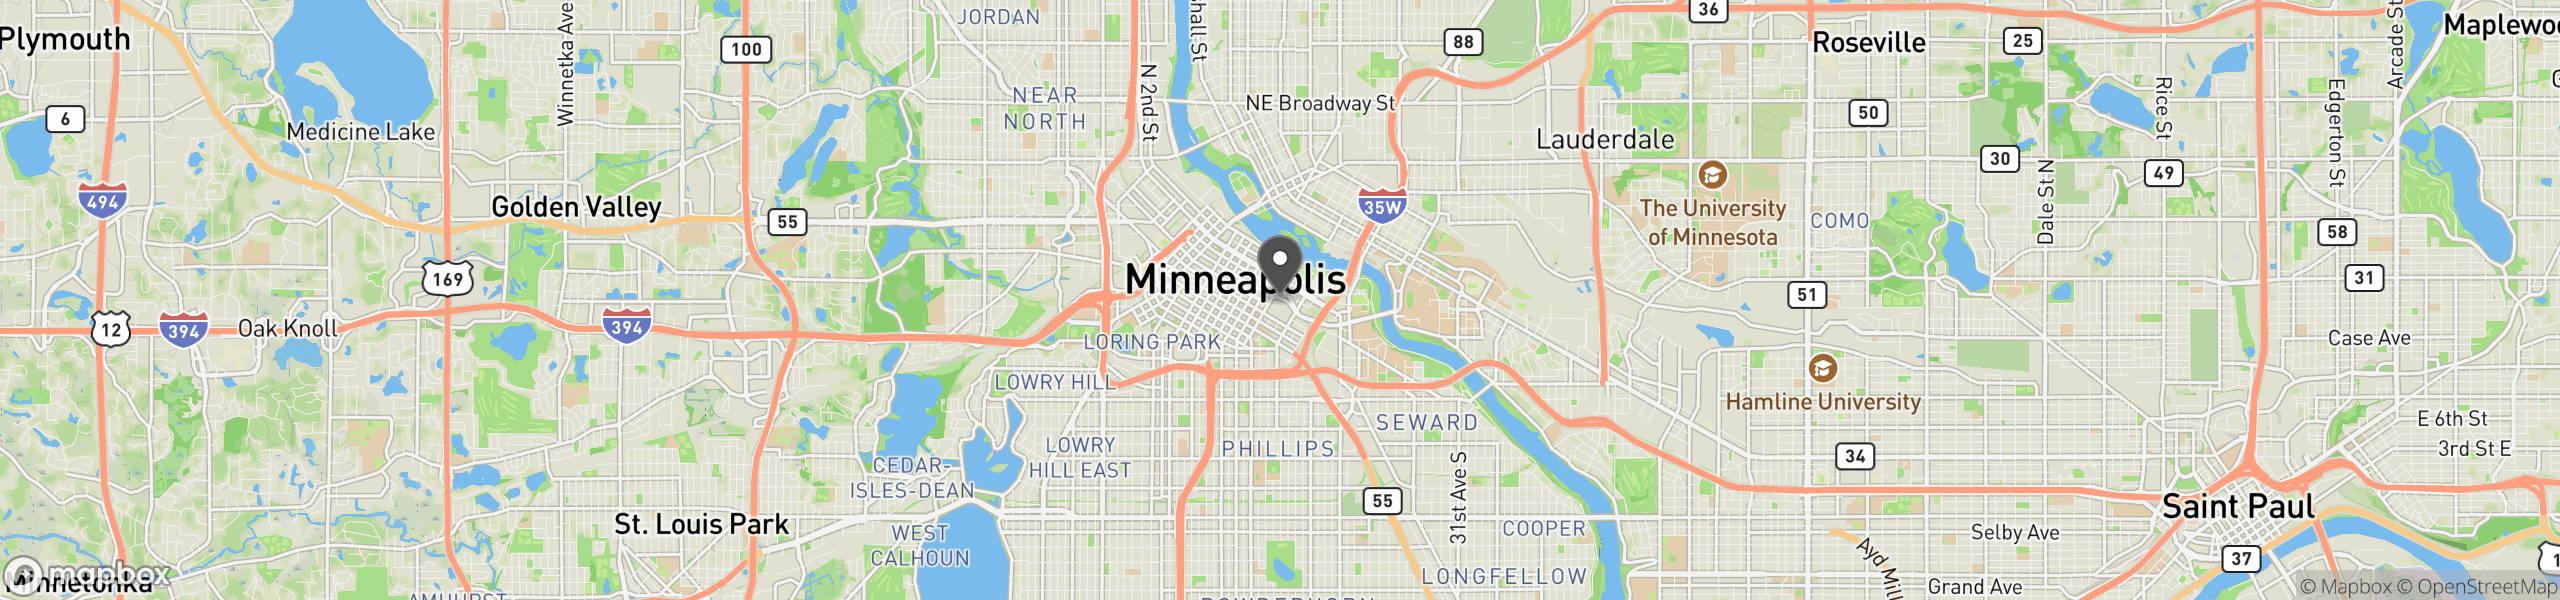 Minneapolis, MN 55415